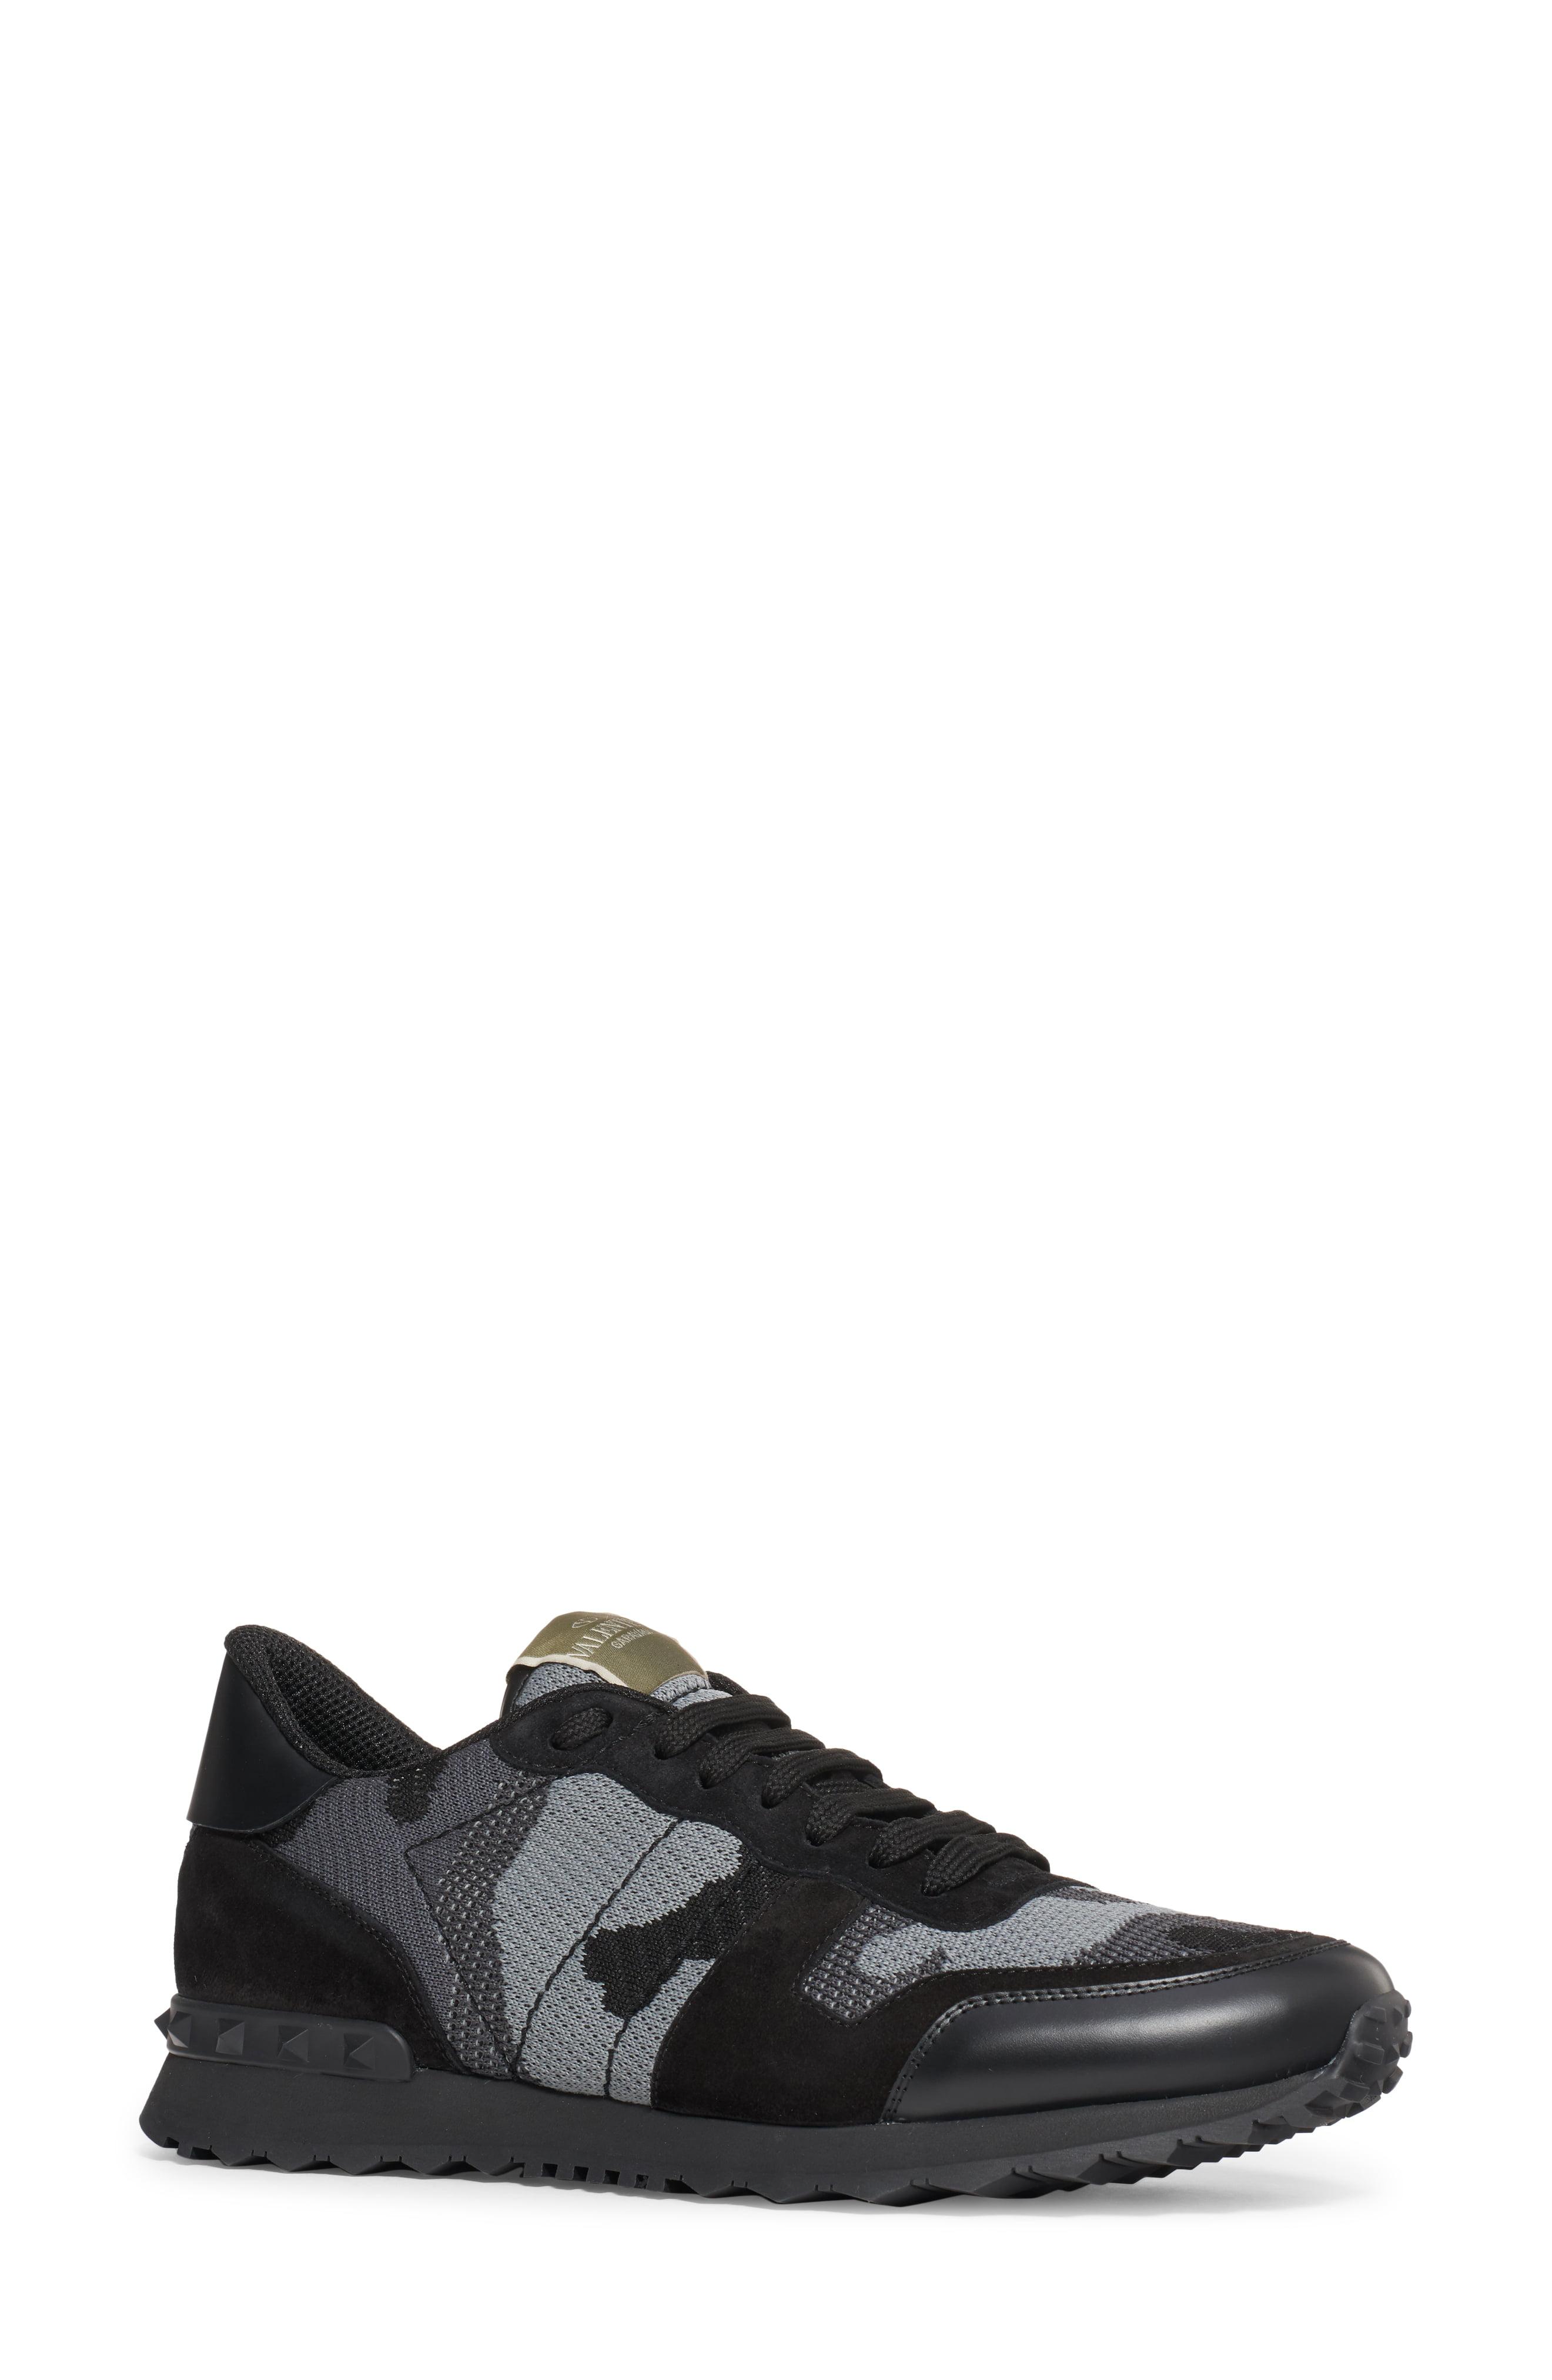 Valentino Garavani Rubber Camo Rockrunner Sneaker in Black Grey (Black ...